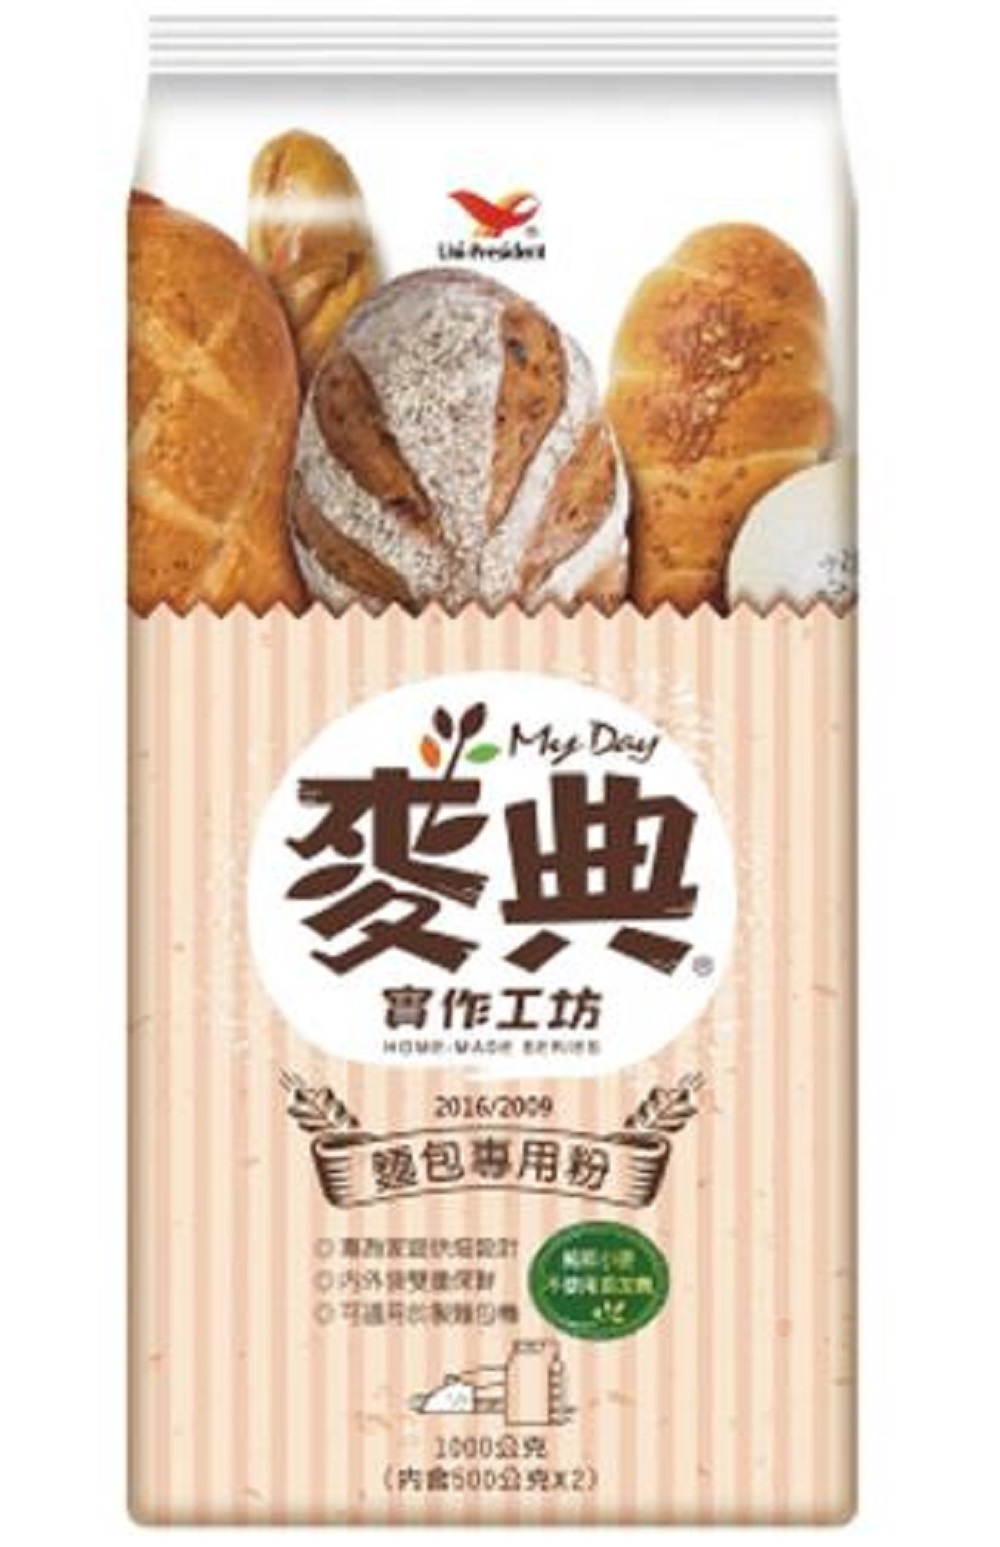 【統一生機】麥典實作工坊麵包專用粉